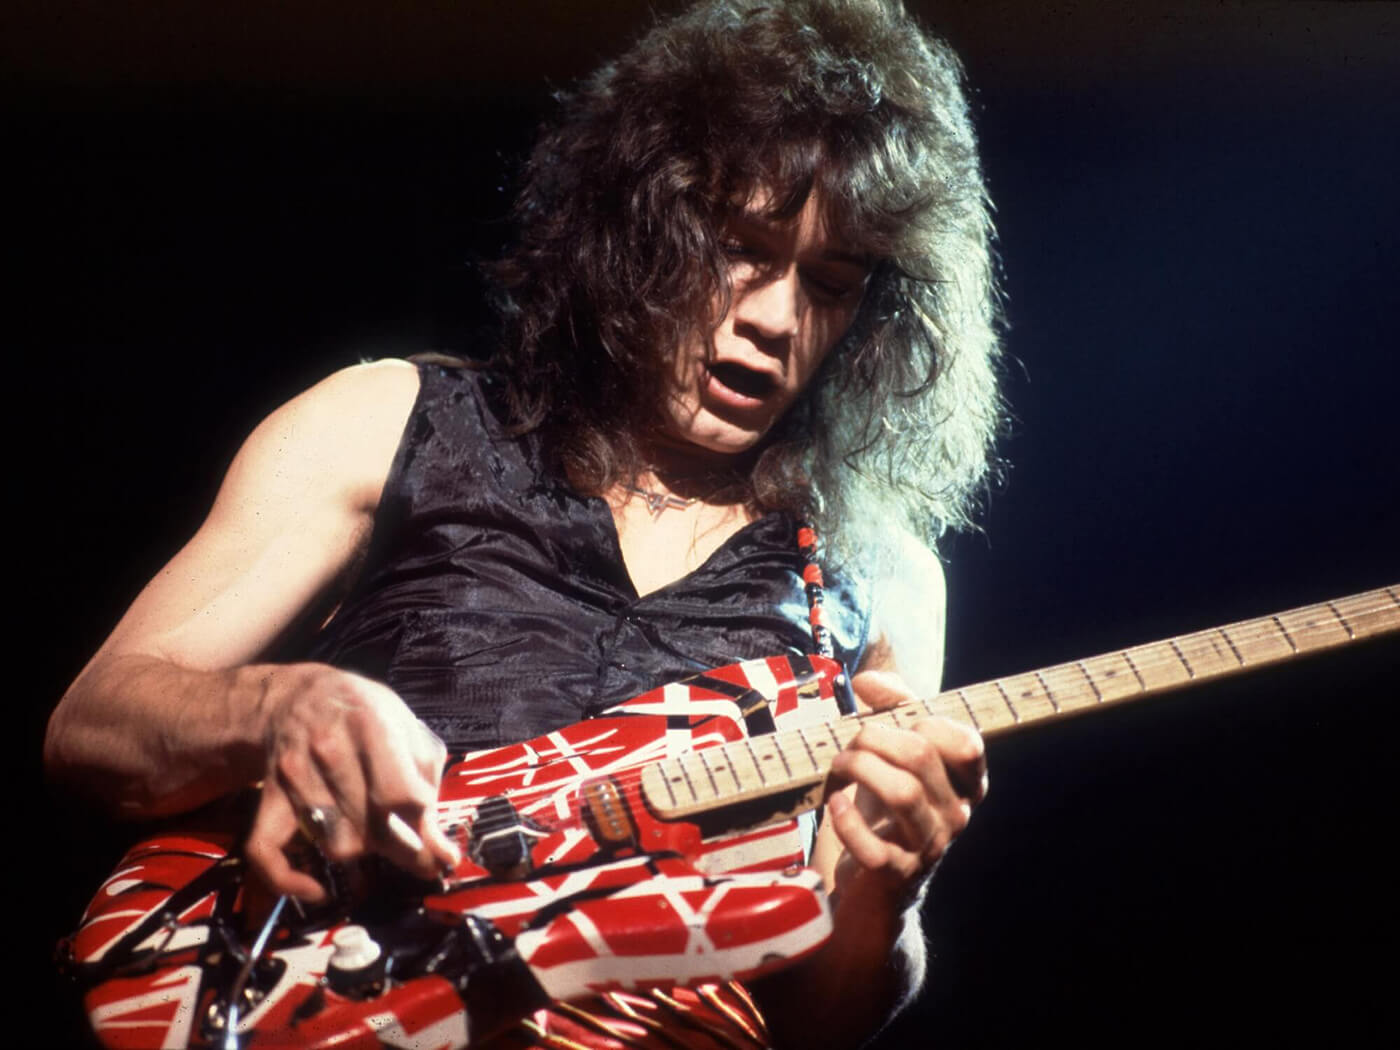 Eddie Van Halen performing in 1979 with his custom Kramer, photo by Paul Natkin/Getty Images